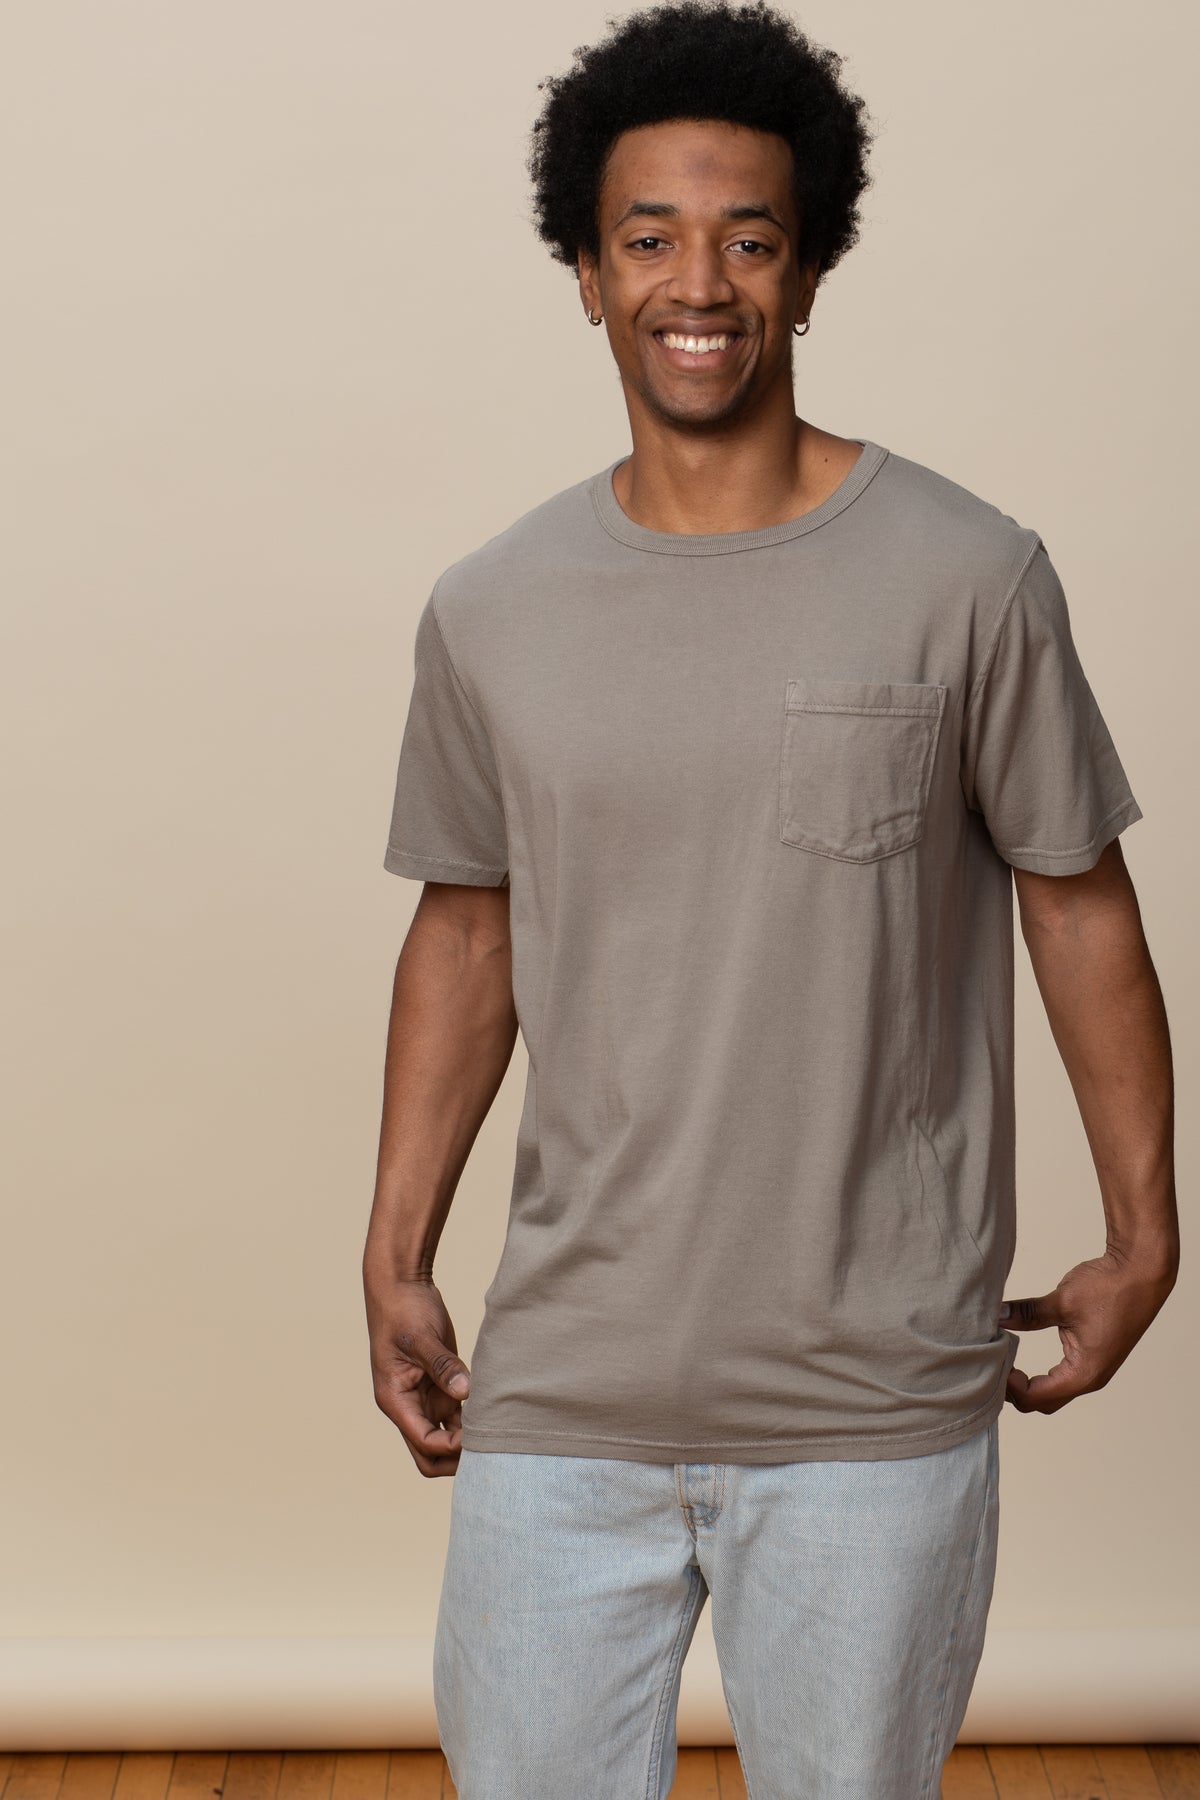 Goodwear USA Men's Lightweight Pocket T Shirt Hemp Made in USA